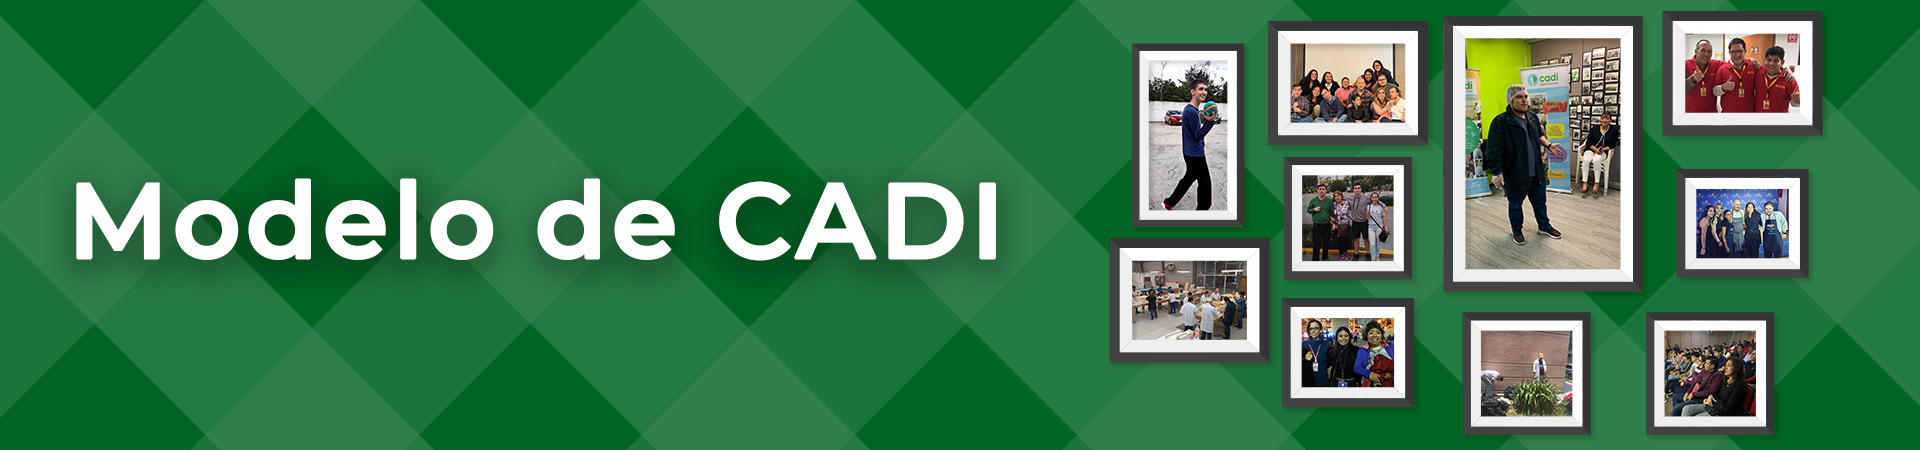 CADI - Capacitación y Desarrollo Integral